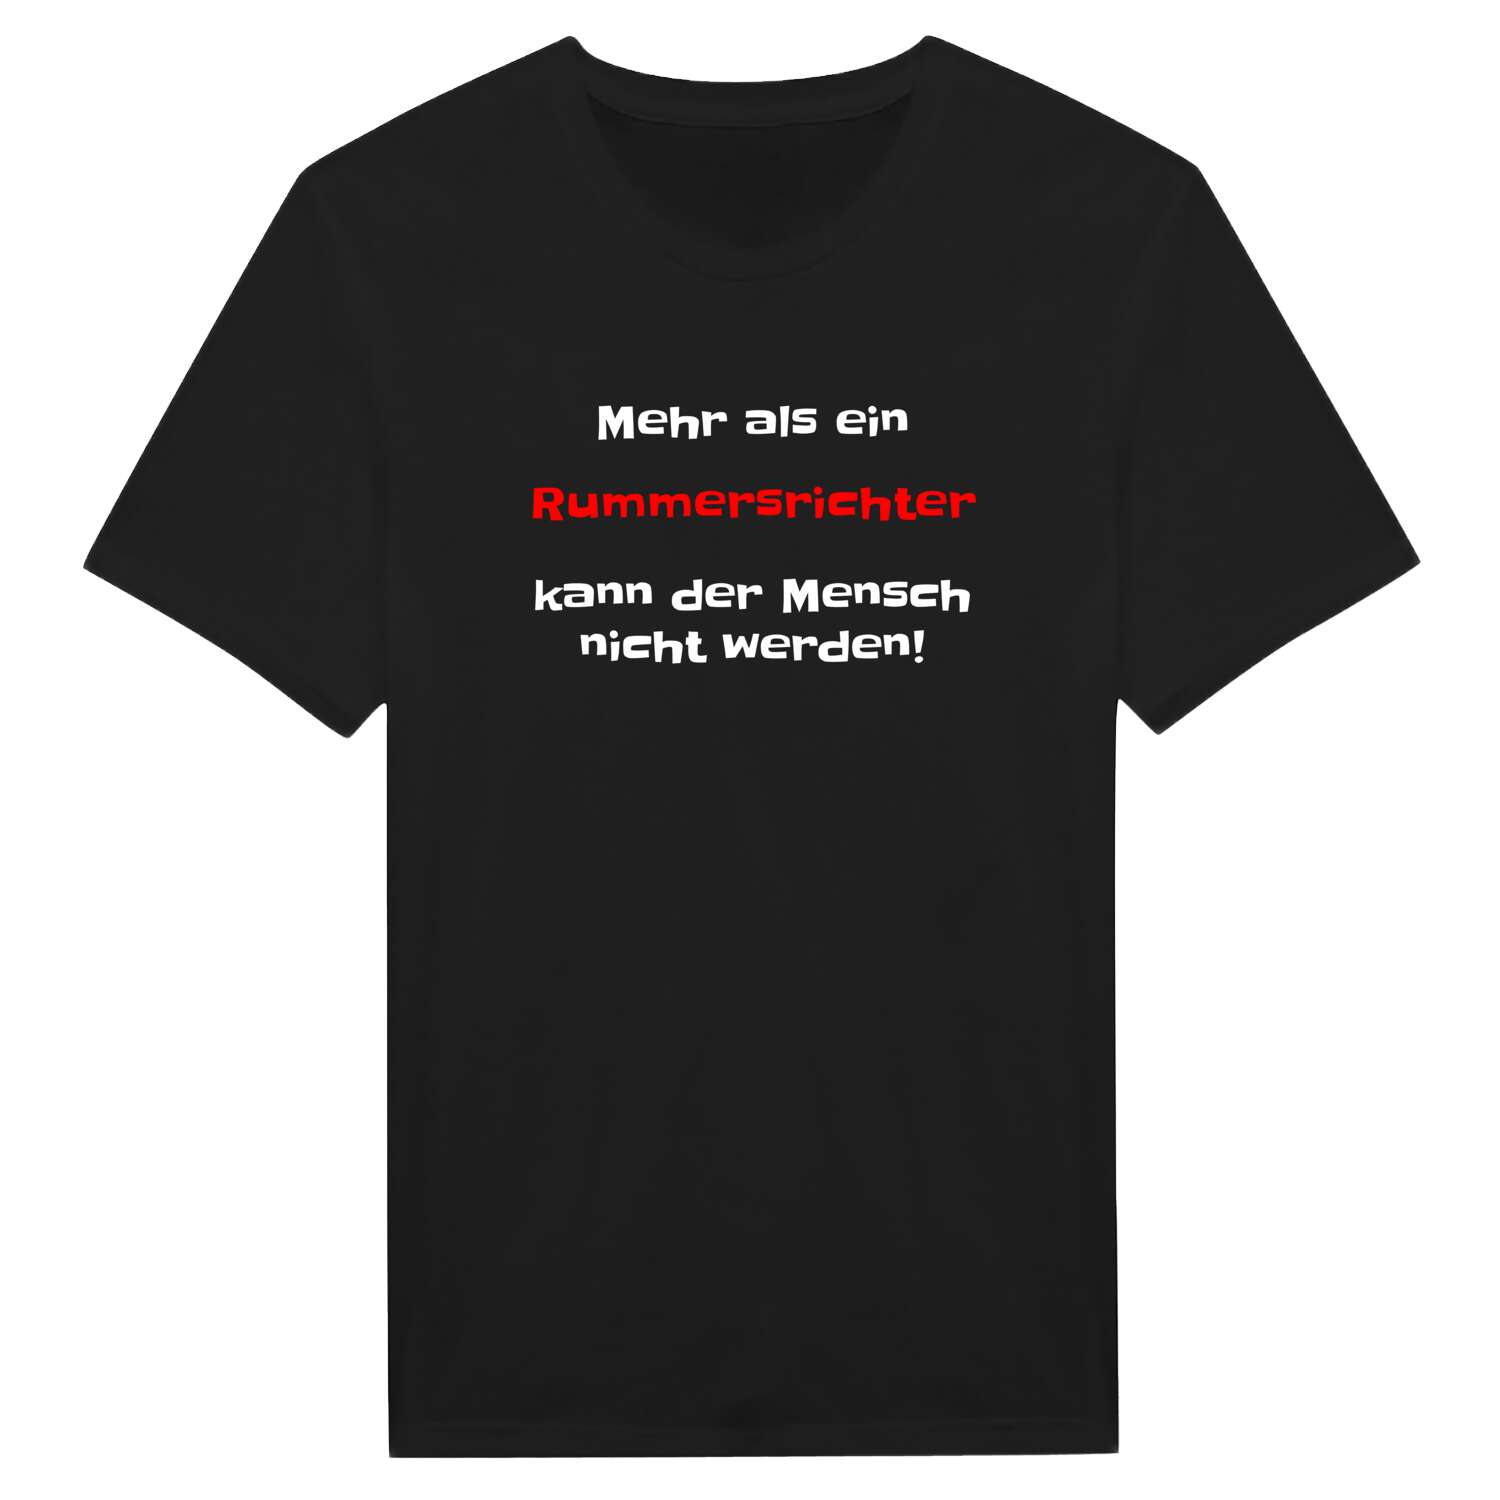 Rummersricht T-Shirt »Mehr als ein«